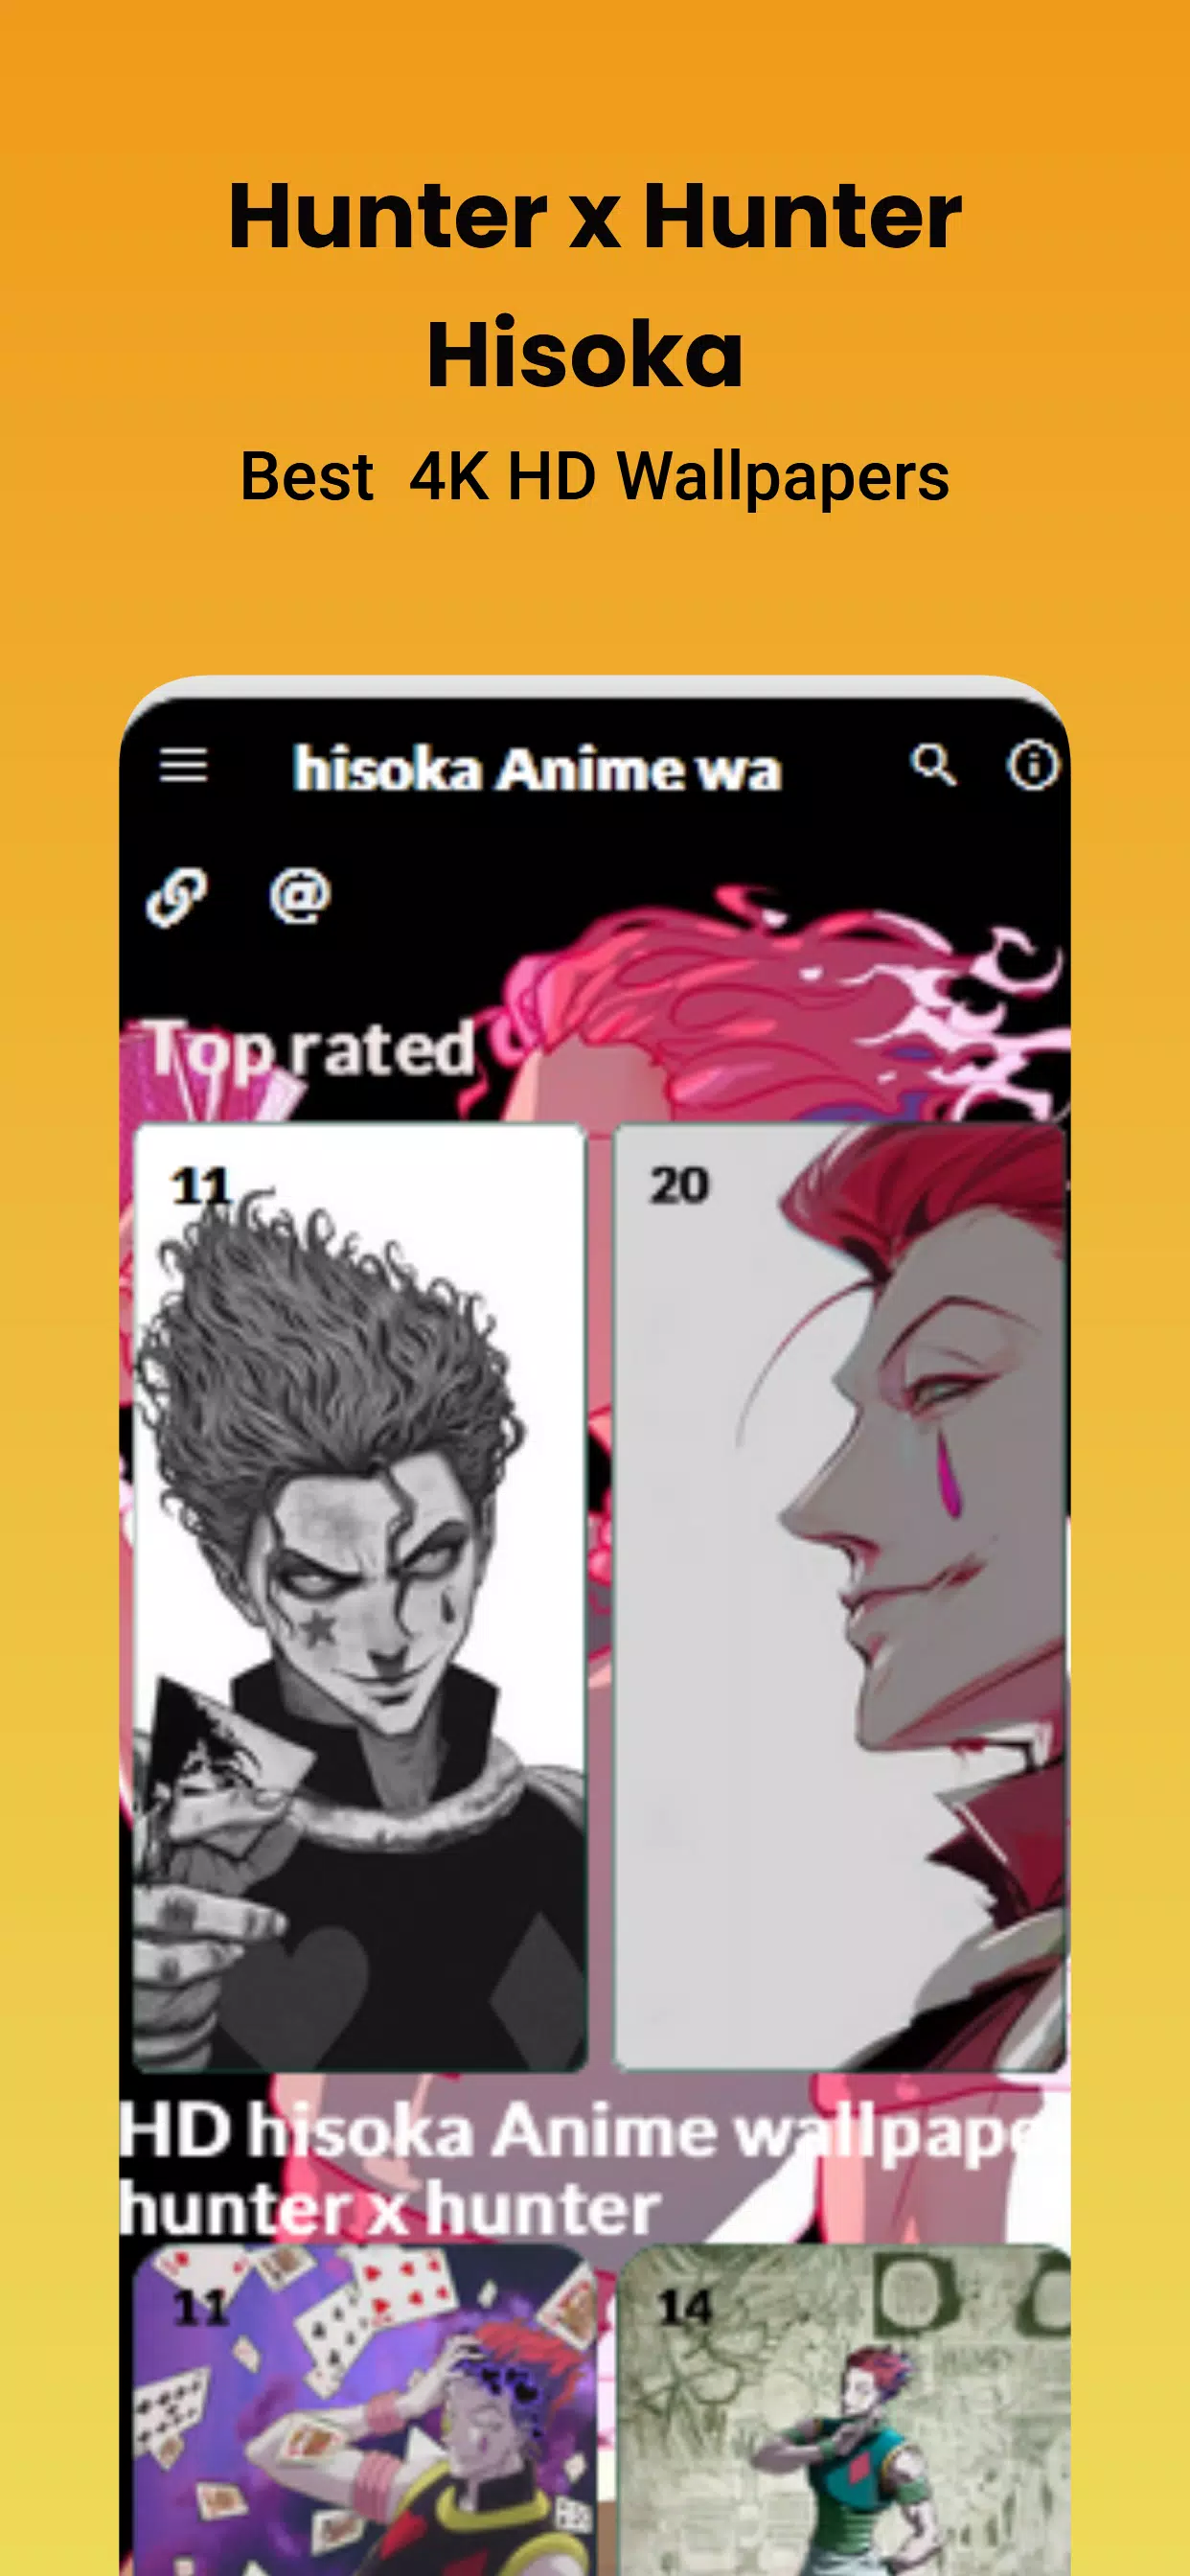 Hisoka anime wallpaper hunter x hunter apk fãr android herunterladen